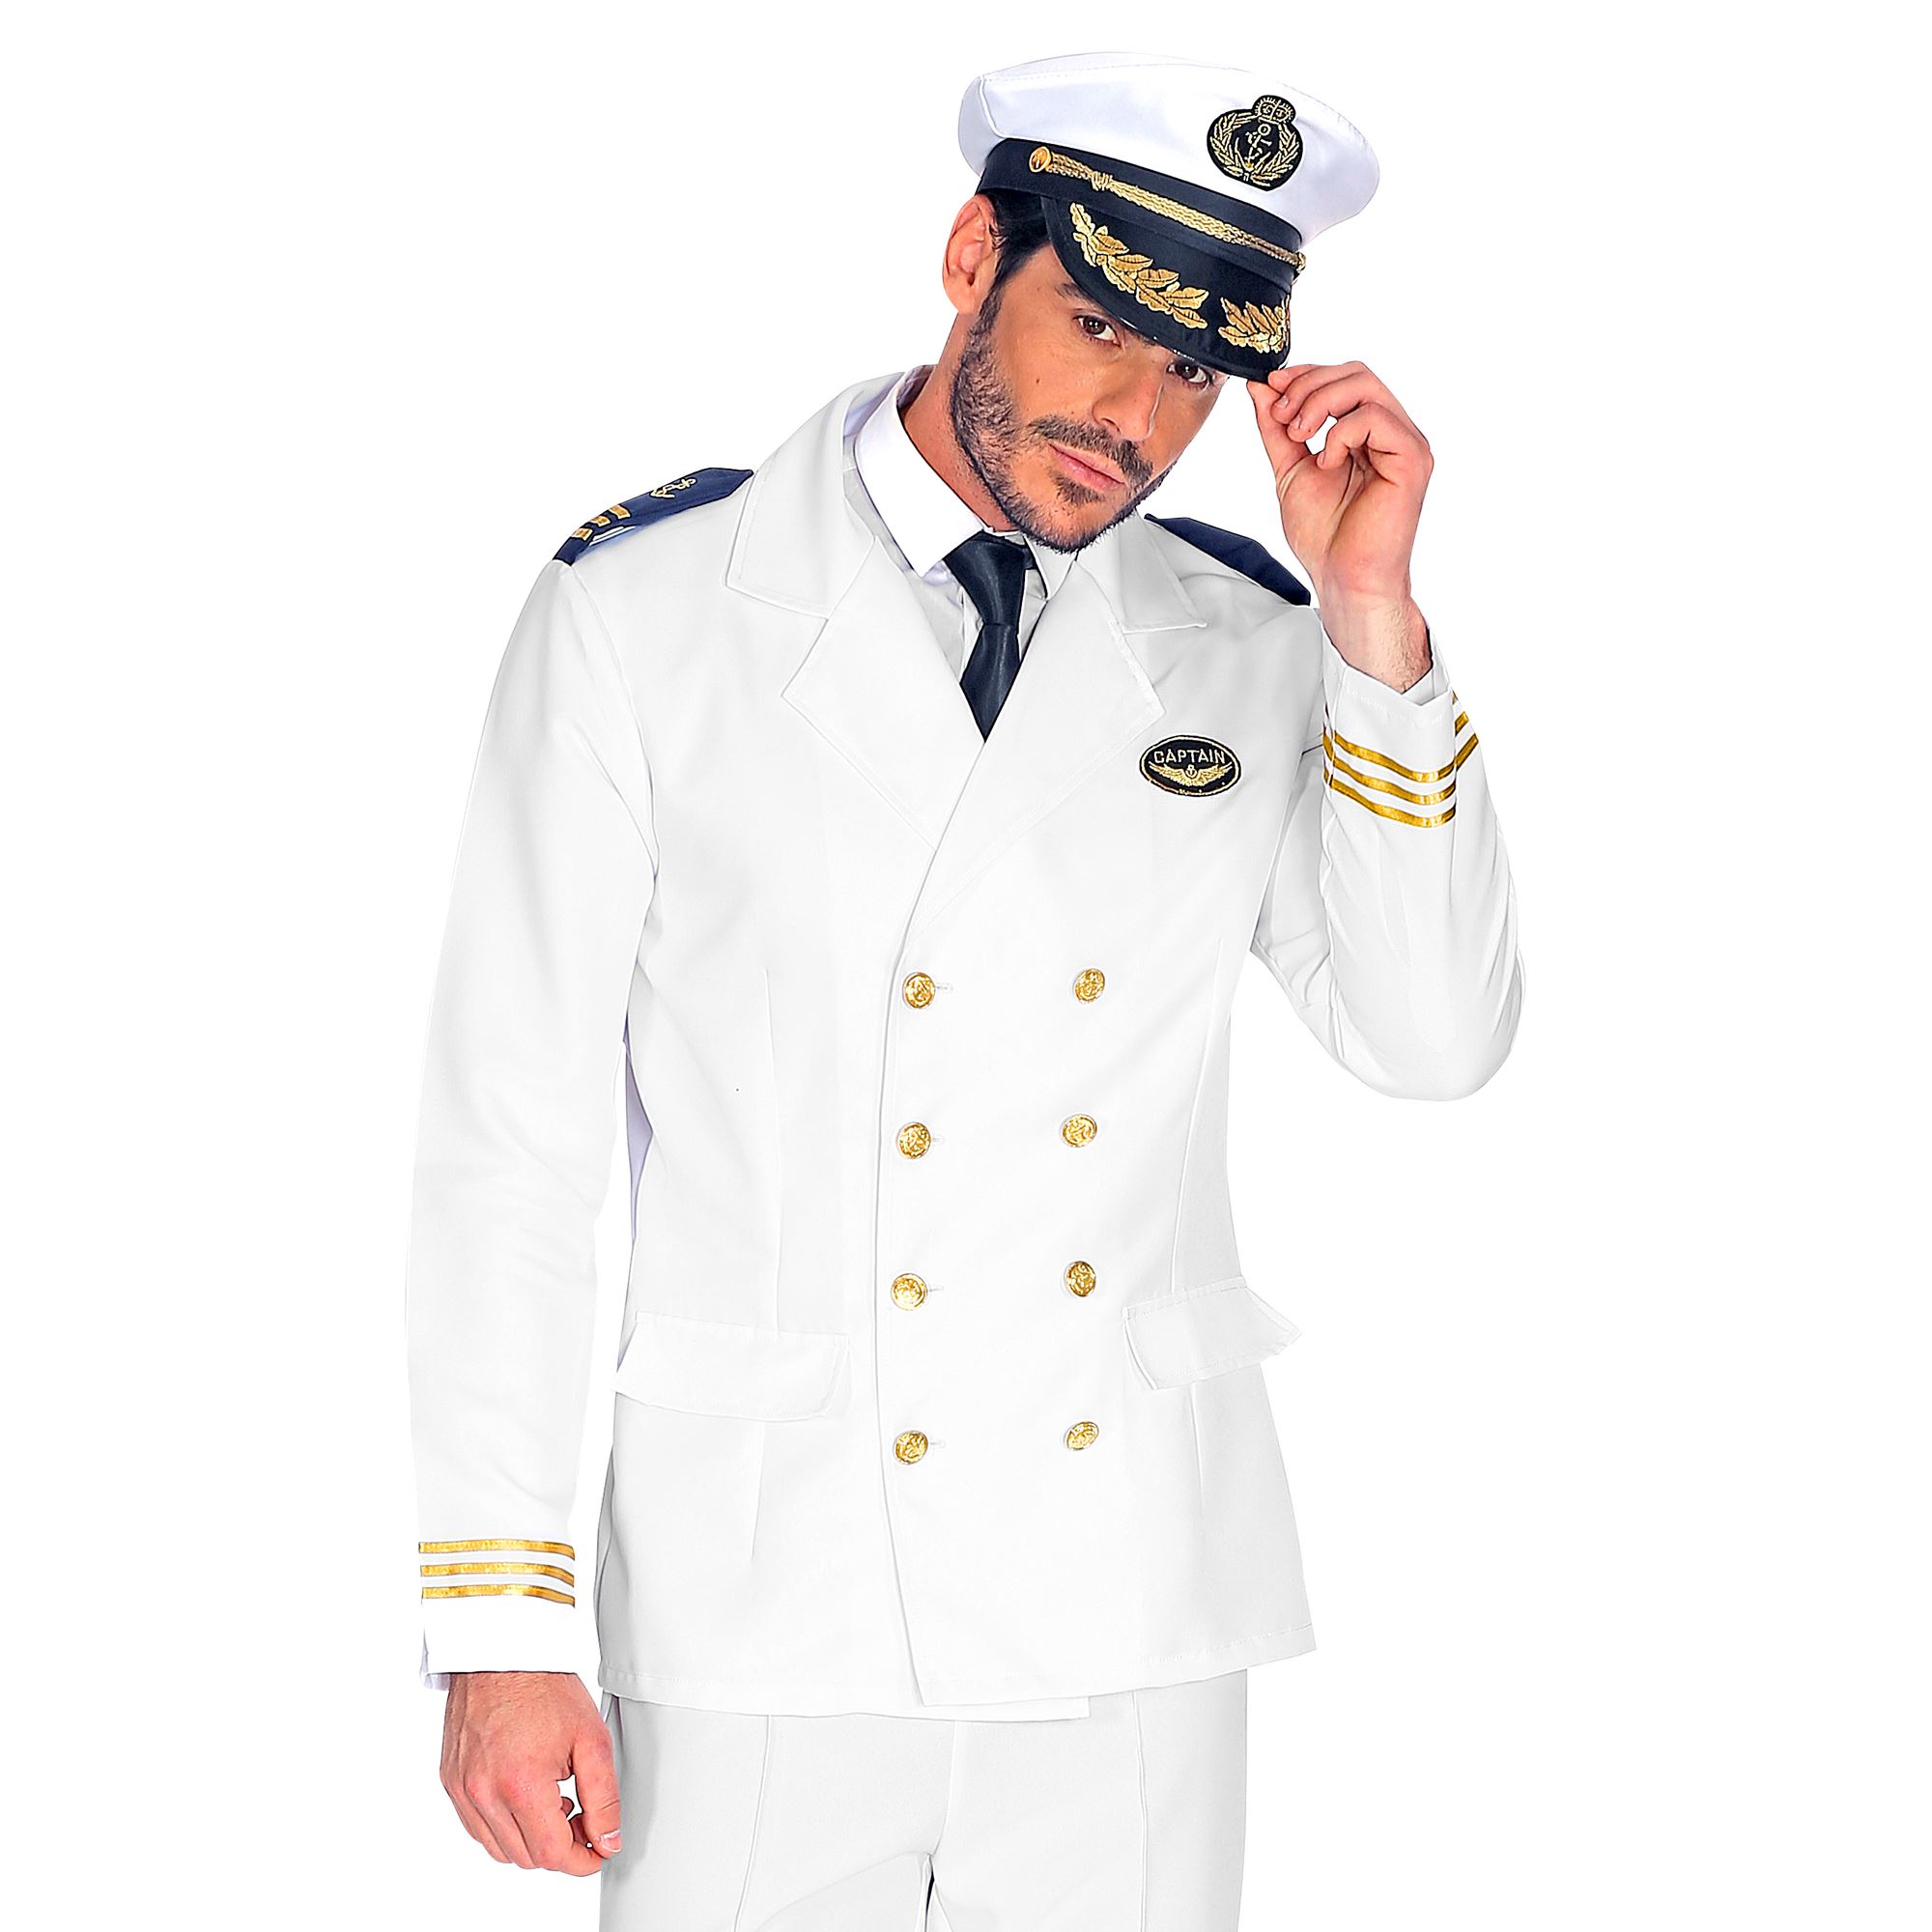 Kapitän Jackett Herrenkostüm Matrose Seemannkostüm Kostüm Weiß